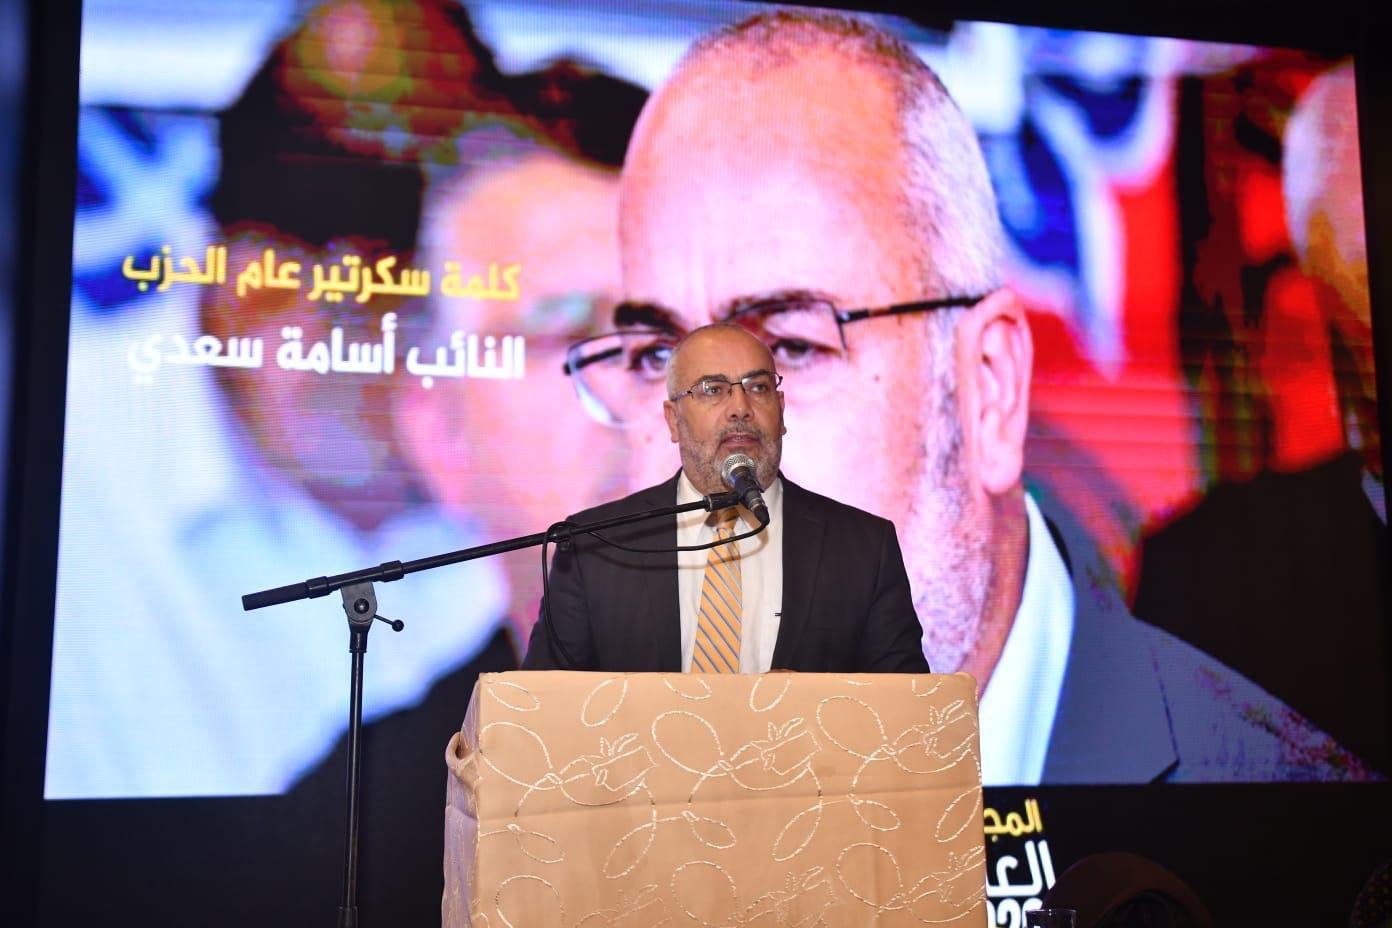 المجلس العام للعربية للتغيير يُقر قائمة مرشحي العربية للتغيير لانتخابات الكنيست الـ 23-7